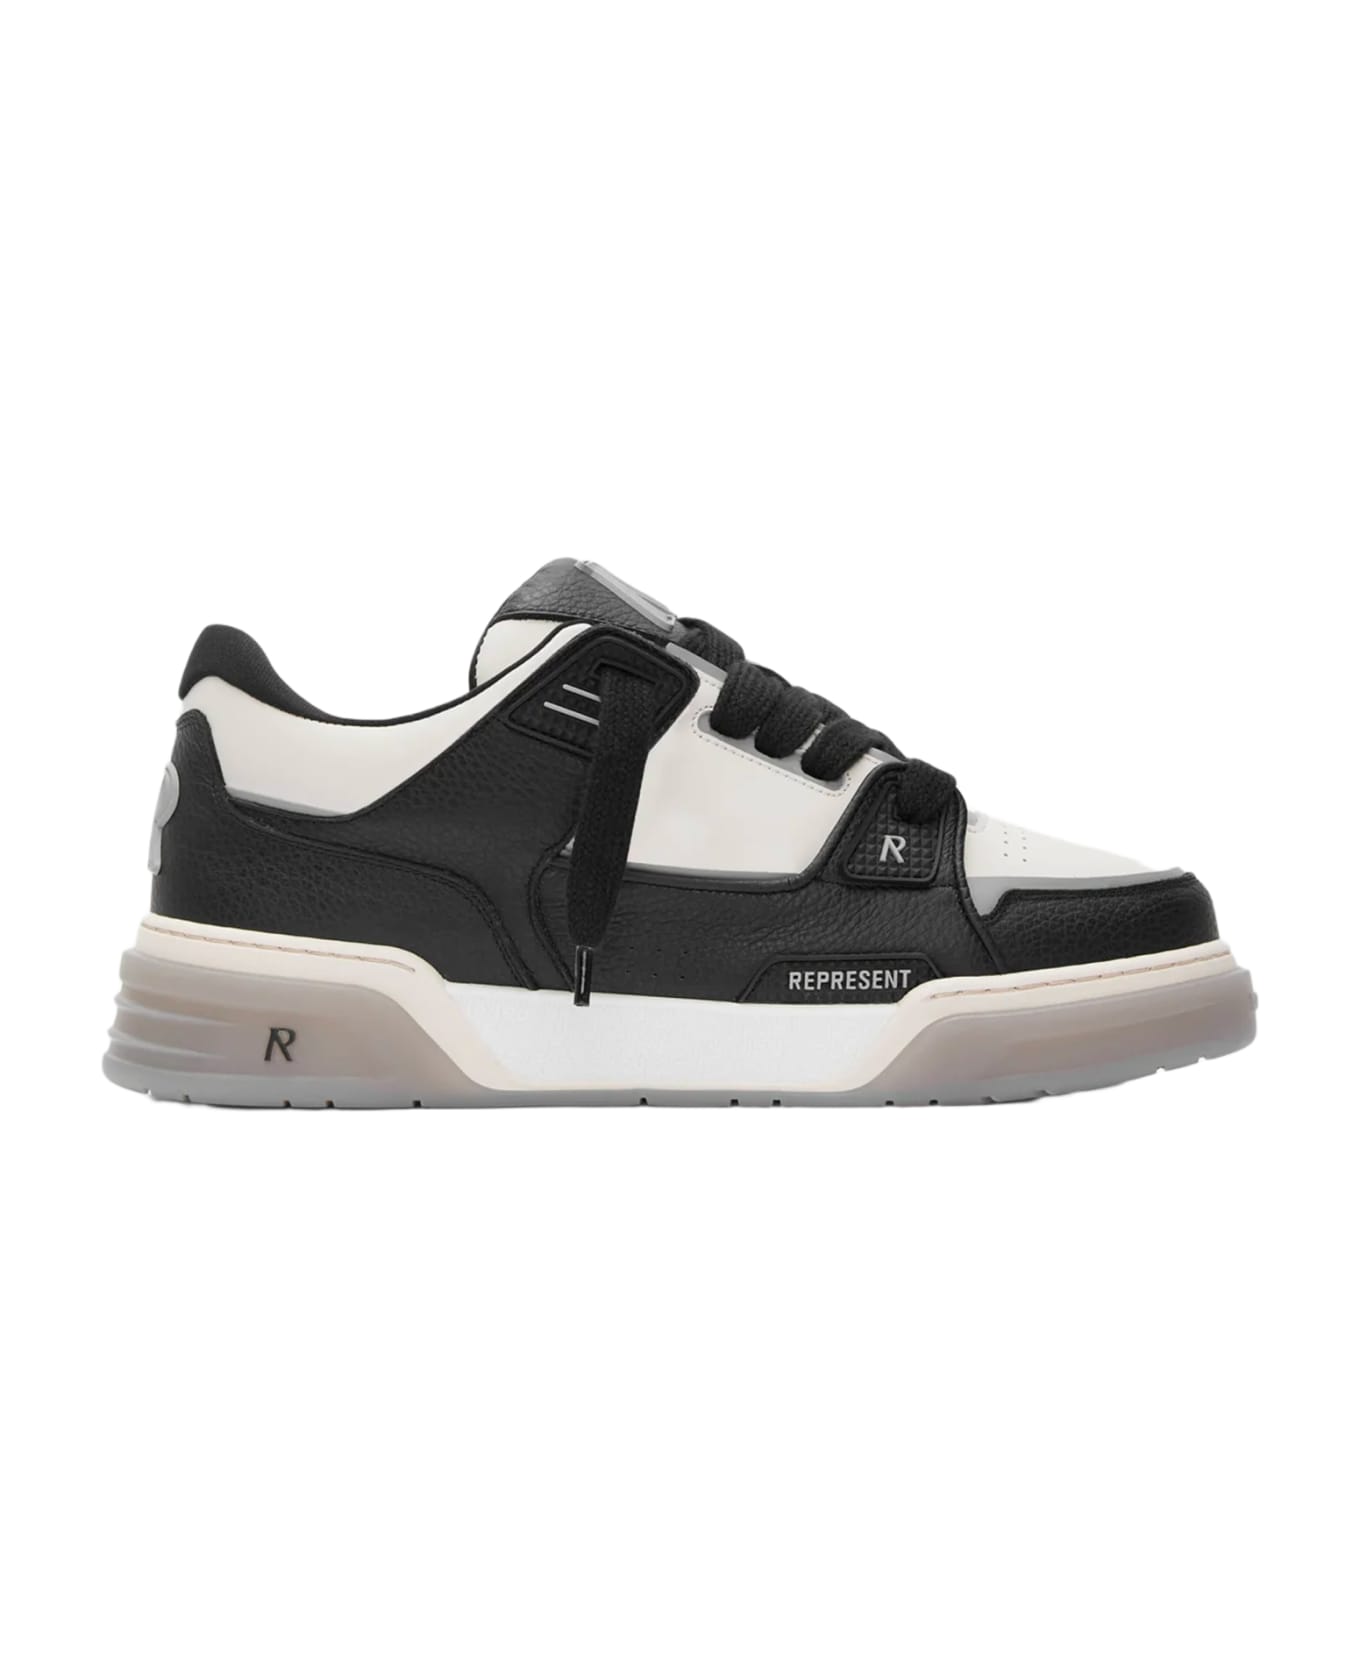 REPRESENT Studio Sneaker Off white and black leather low chunky sneaker - Studio sneaker - Nero/bianco